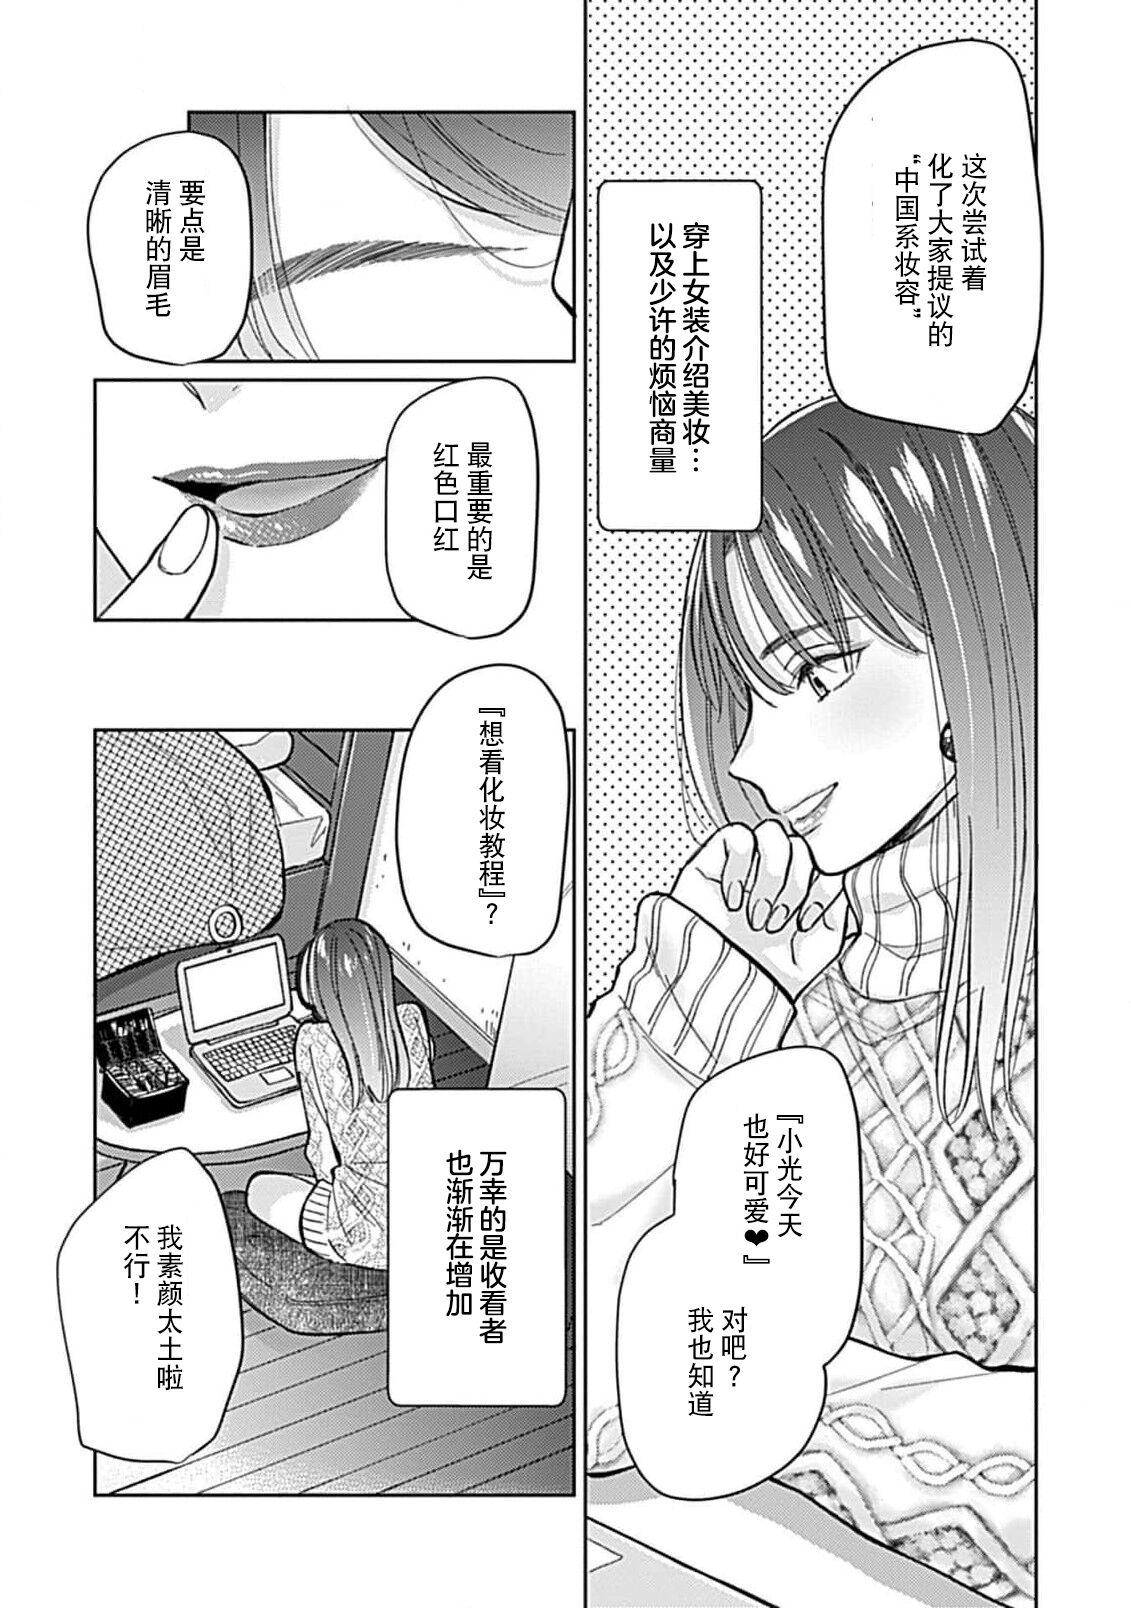 Chupando Koi to Himitsu wa Utsuranai 1 - It doesn't show love and secret. | 恋情与秘密难以映照 1 Massage - Page 7